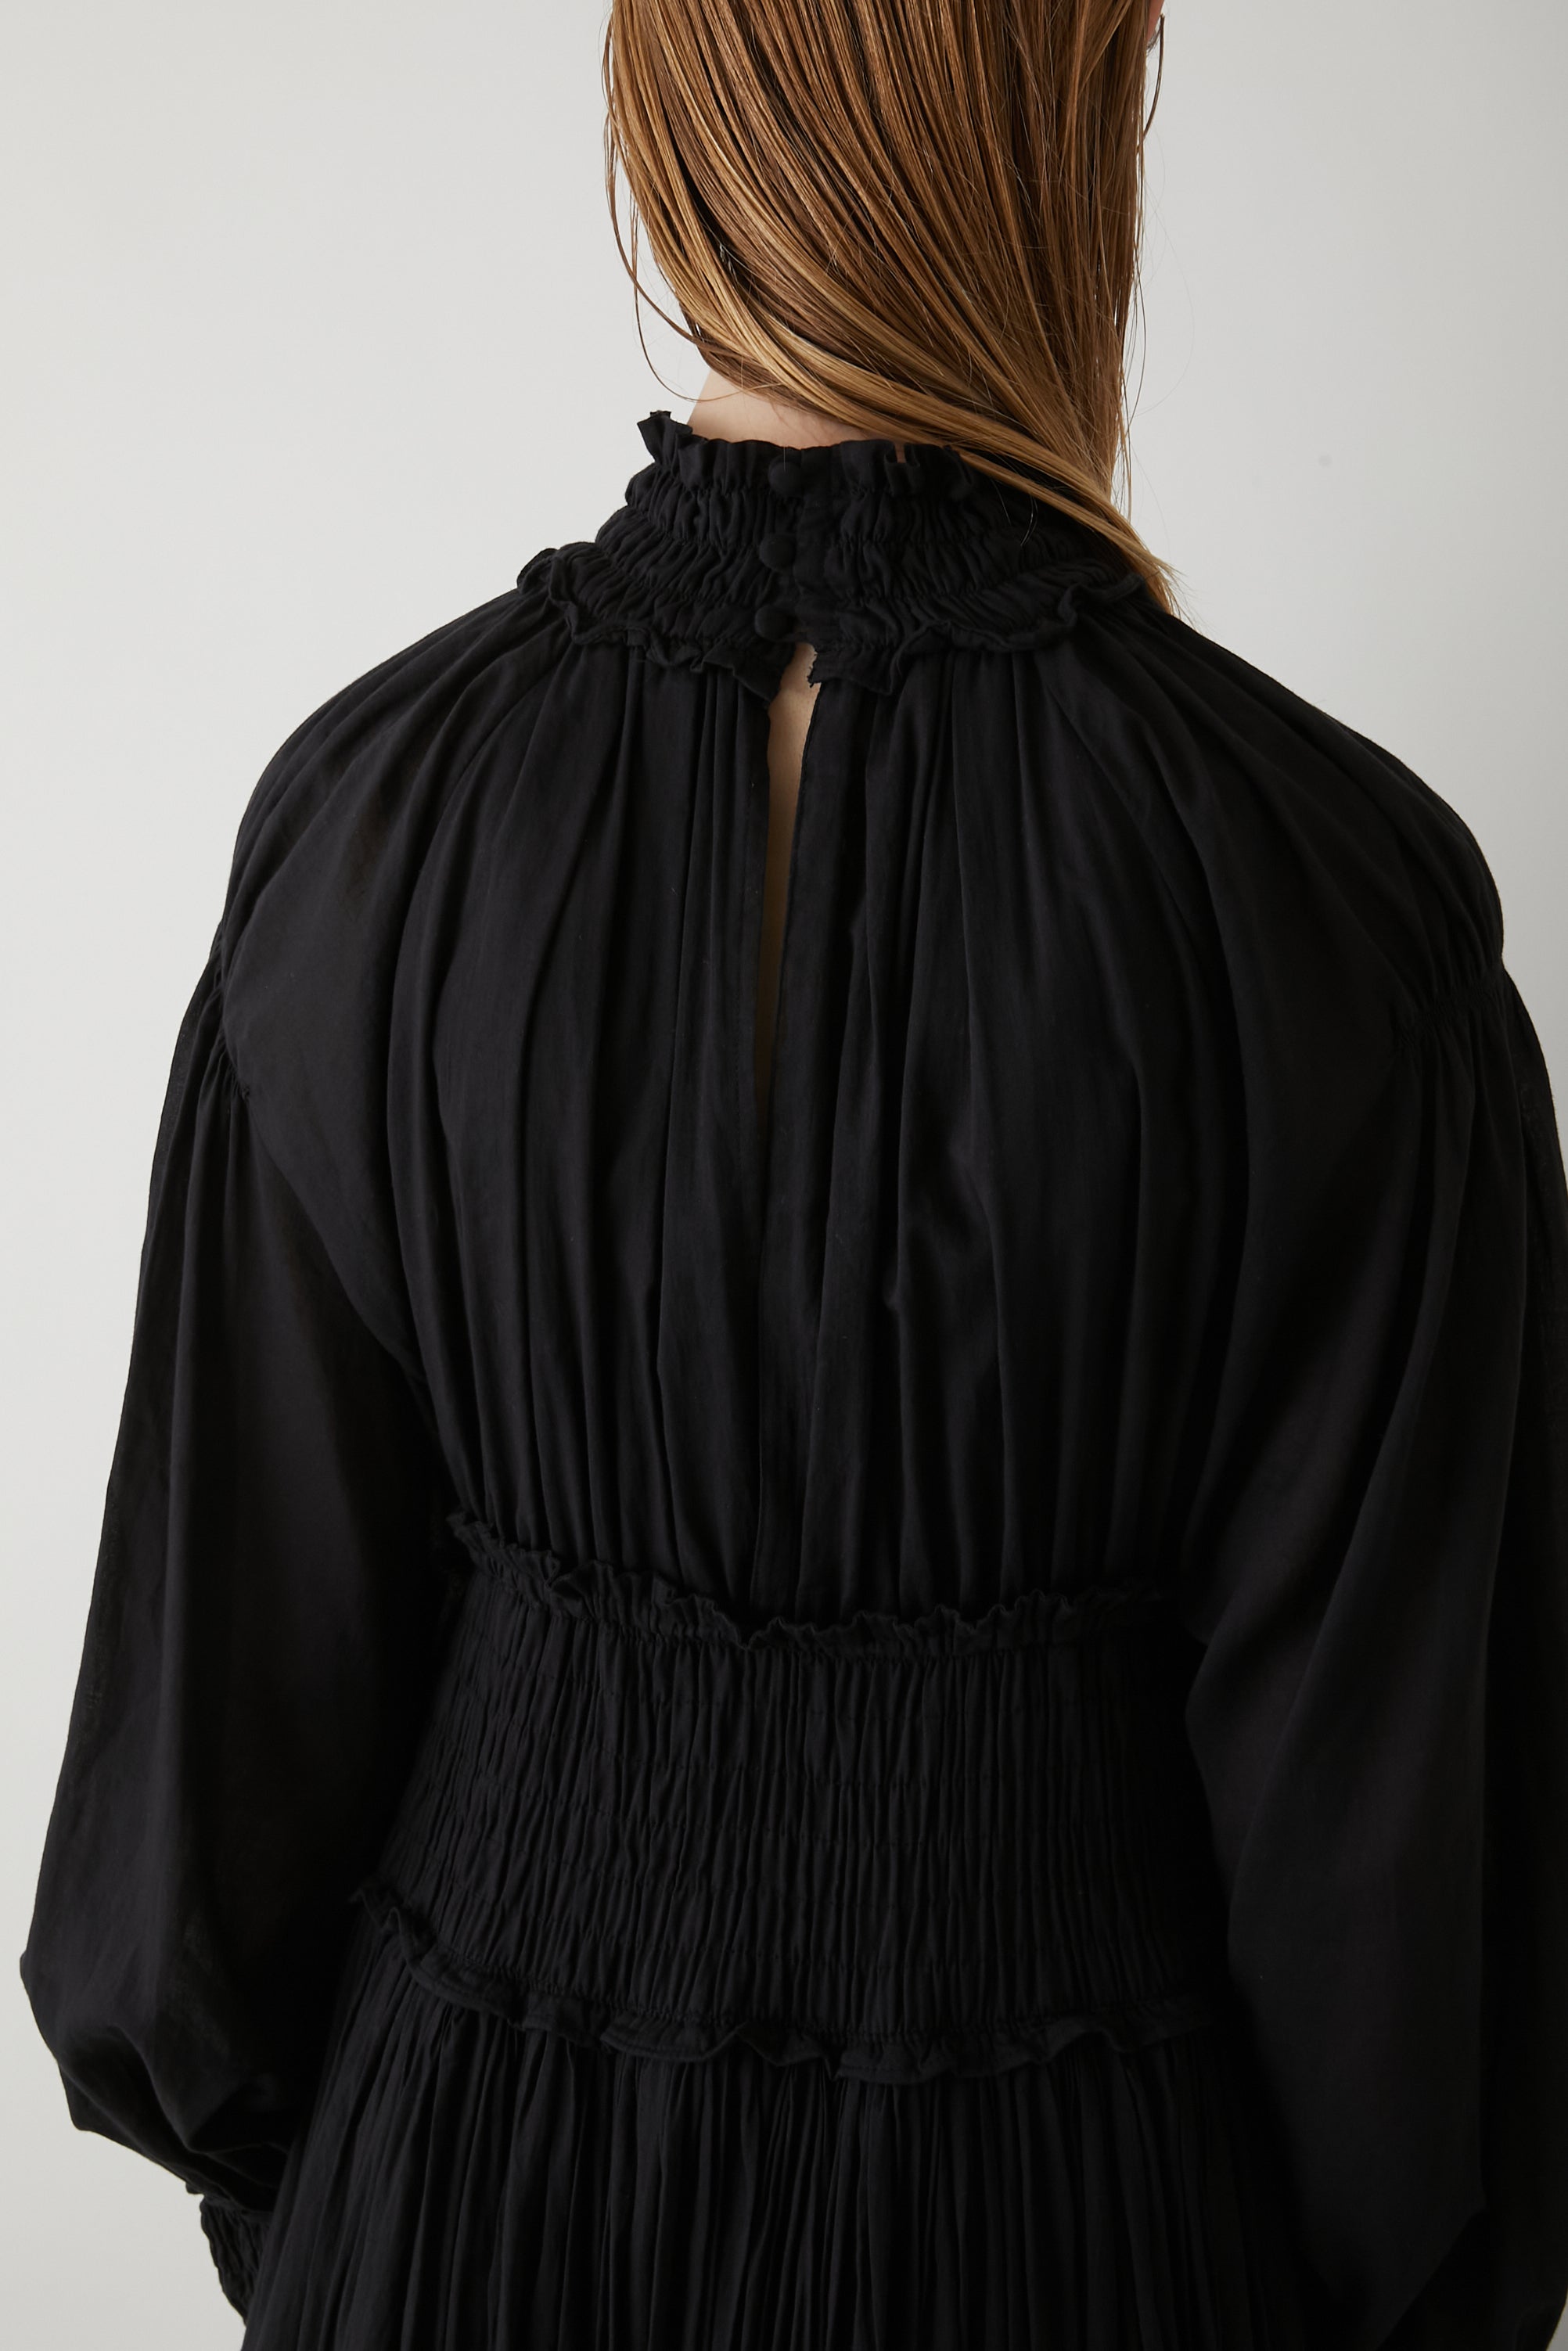 cotton voil dress │ BLACK